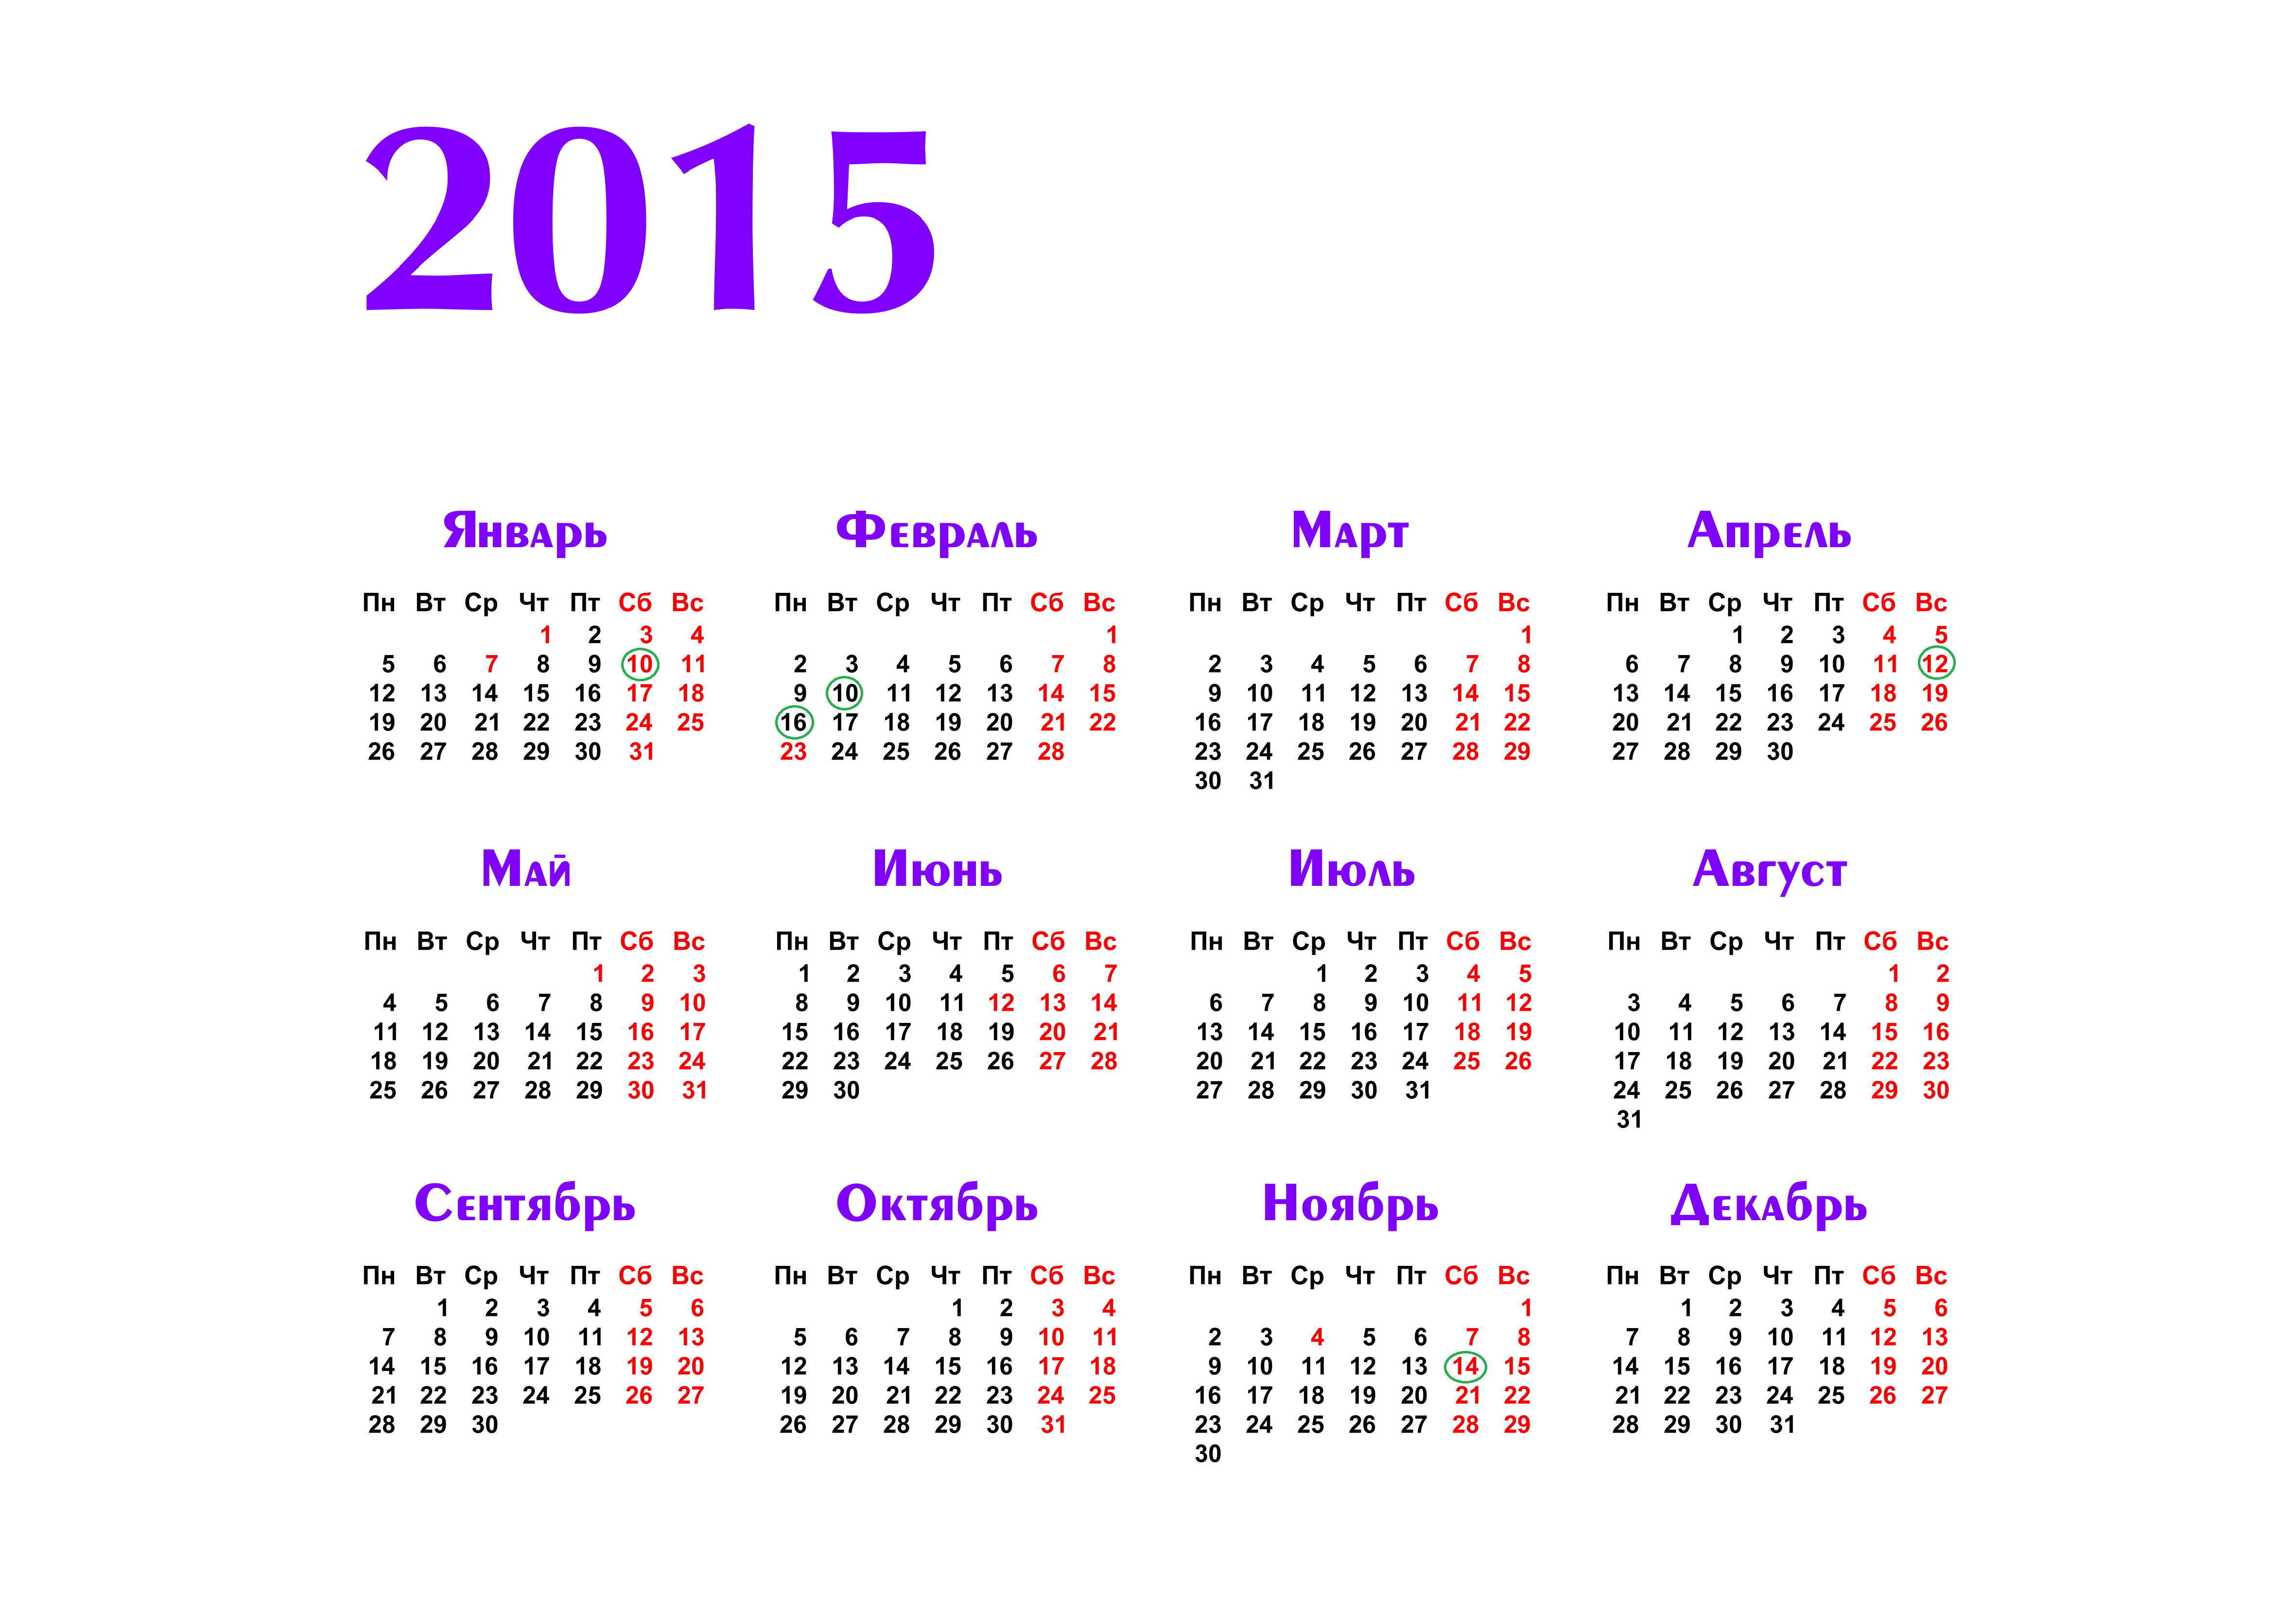 2014 2015 году. Календарь на 2015 год. Календарь 2015 года по месяцам. Календарь 2015г.по месяцам. Календарь 2015г.по месяцам календарные дни.